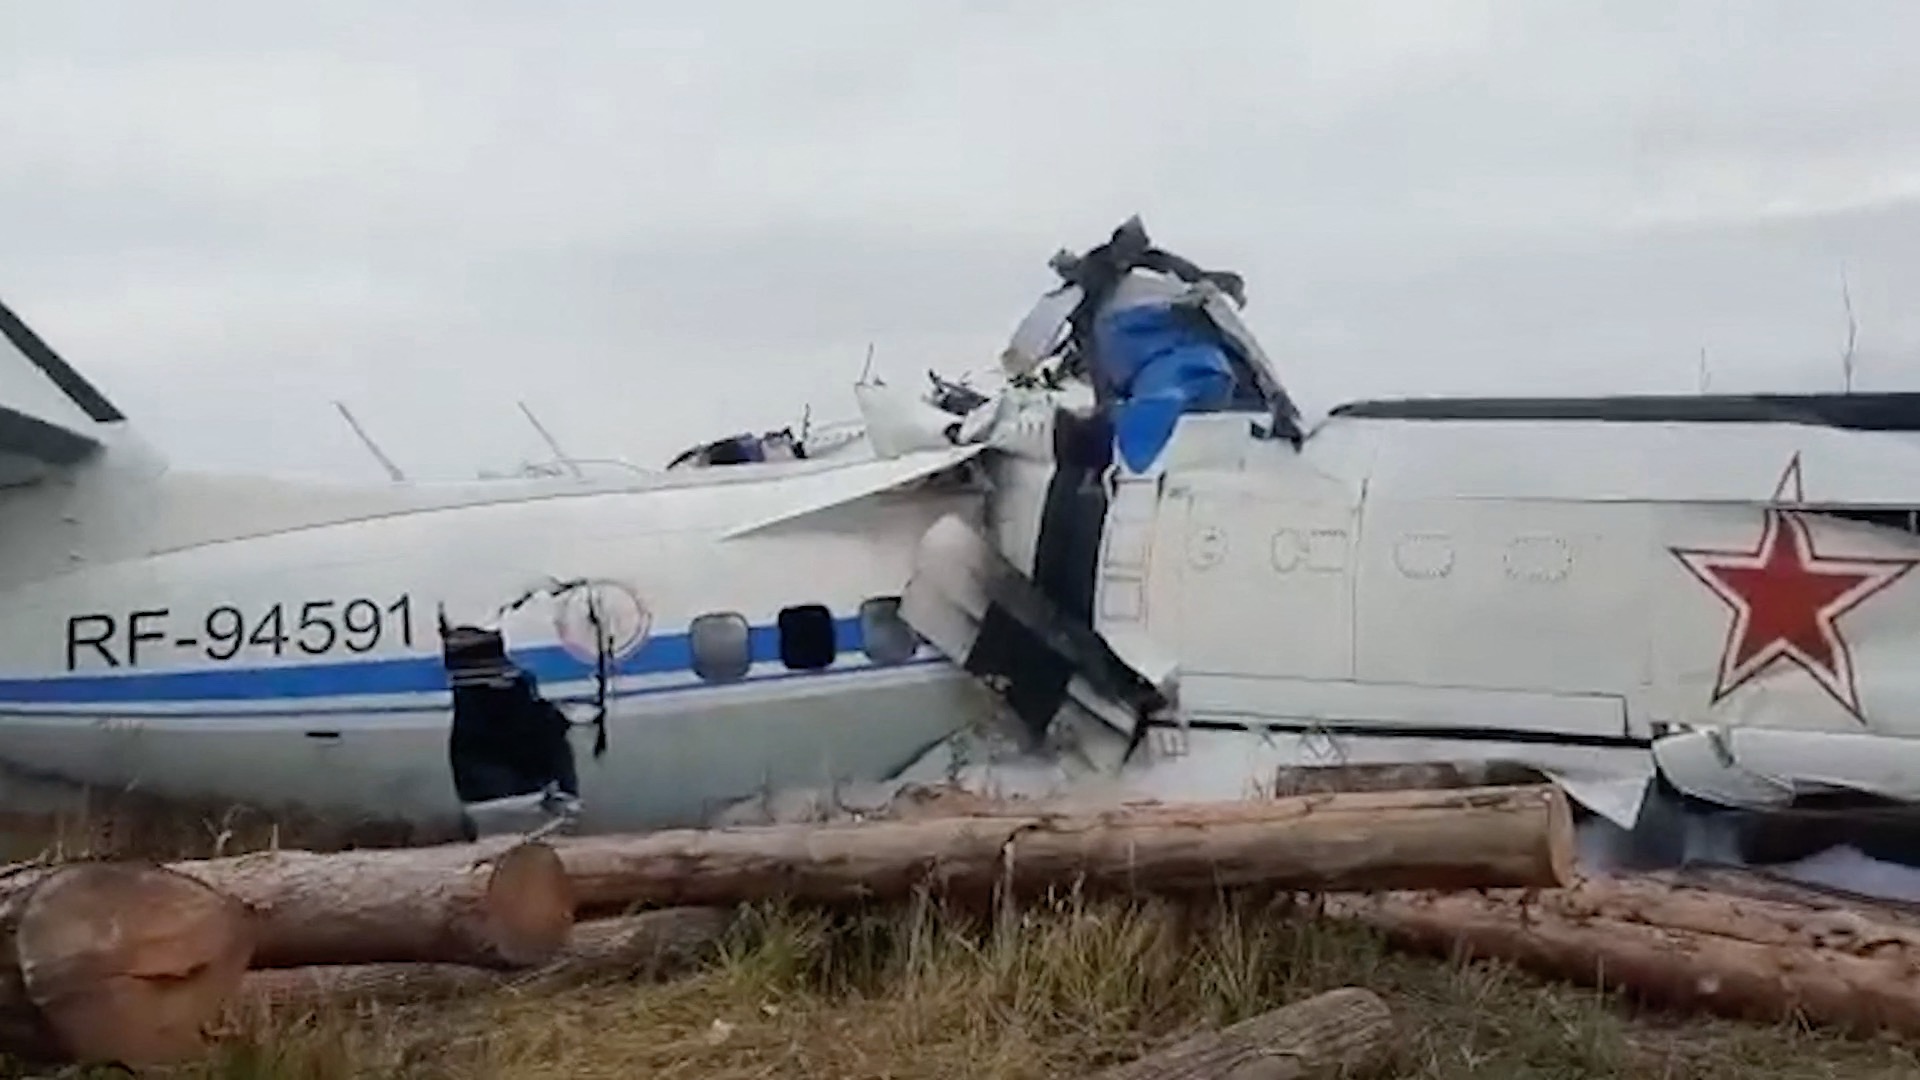 Lezuhant egy sportejtőernyősöket szállító repülőgép Oroszországban, 16-an meghaltak